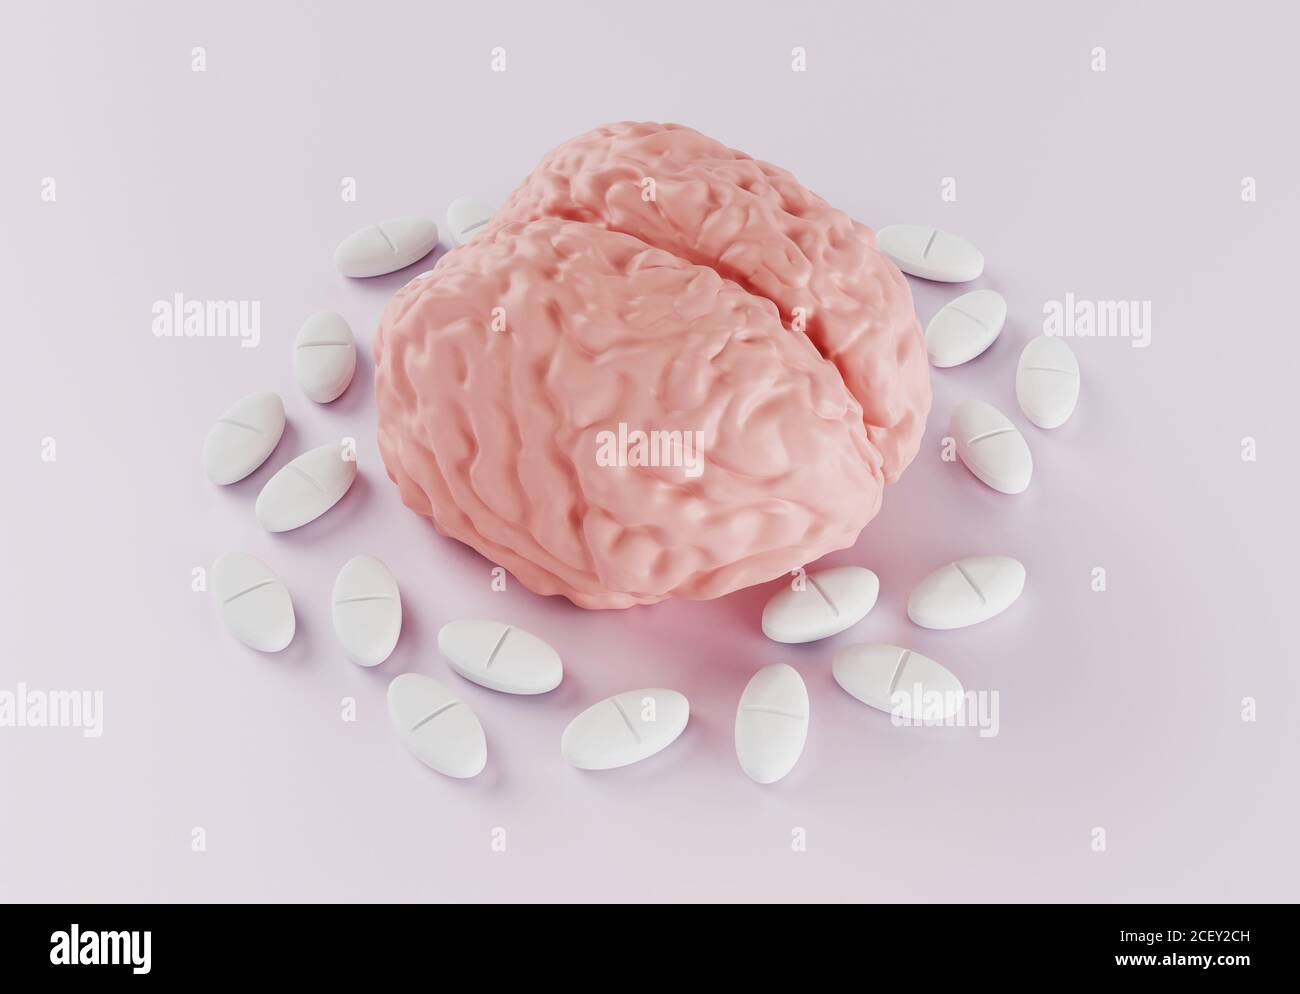 cerebro humano rodeado de píldoras sobre fondo claro, nootrópico para el cerebro o la píldora de dolor de cabeza, un fármaco para mejorar la actividad cerebral, adicción a la píldora, 3d re Foto de stock